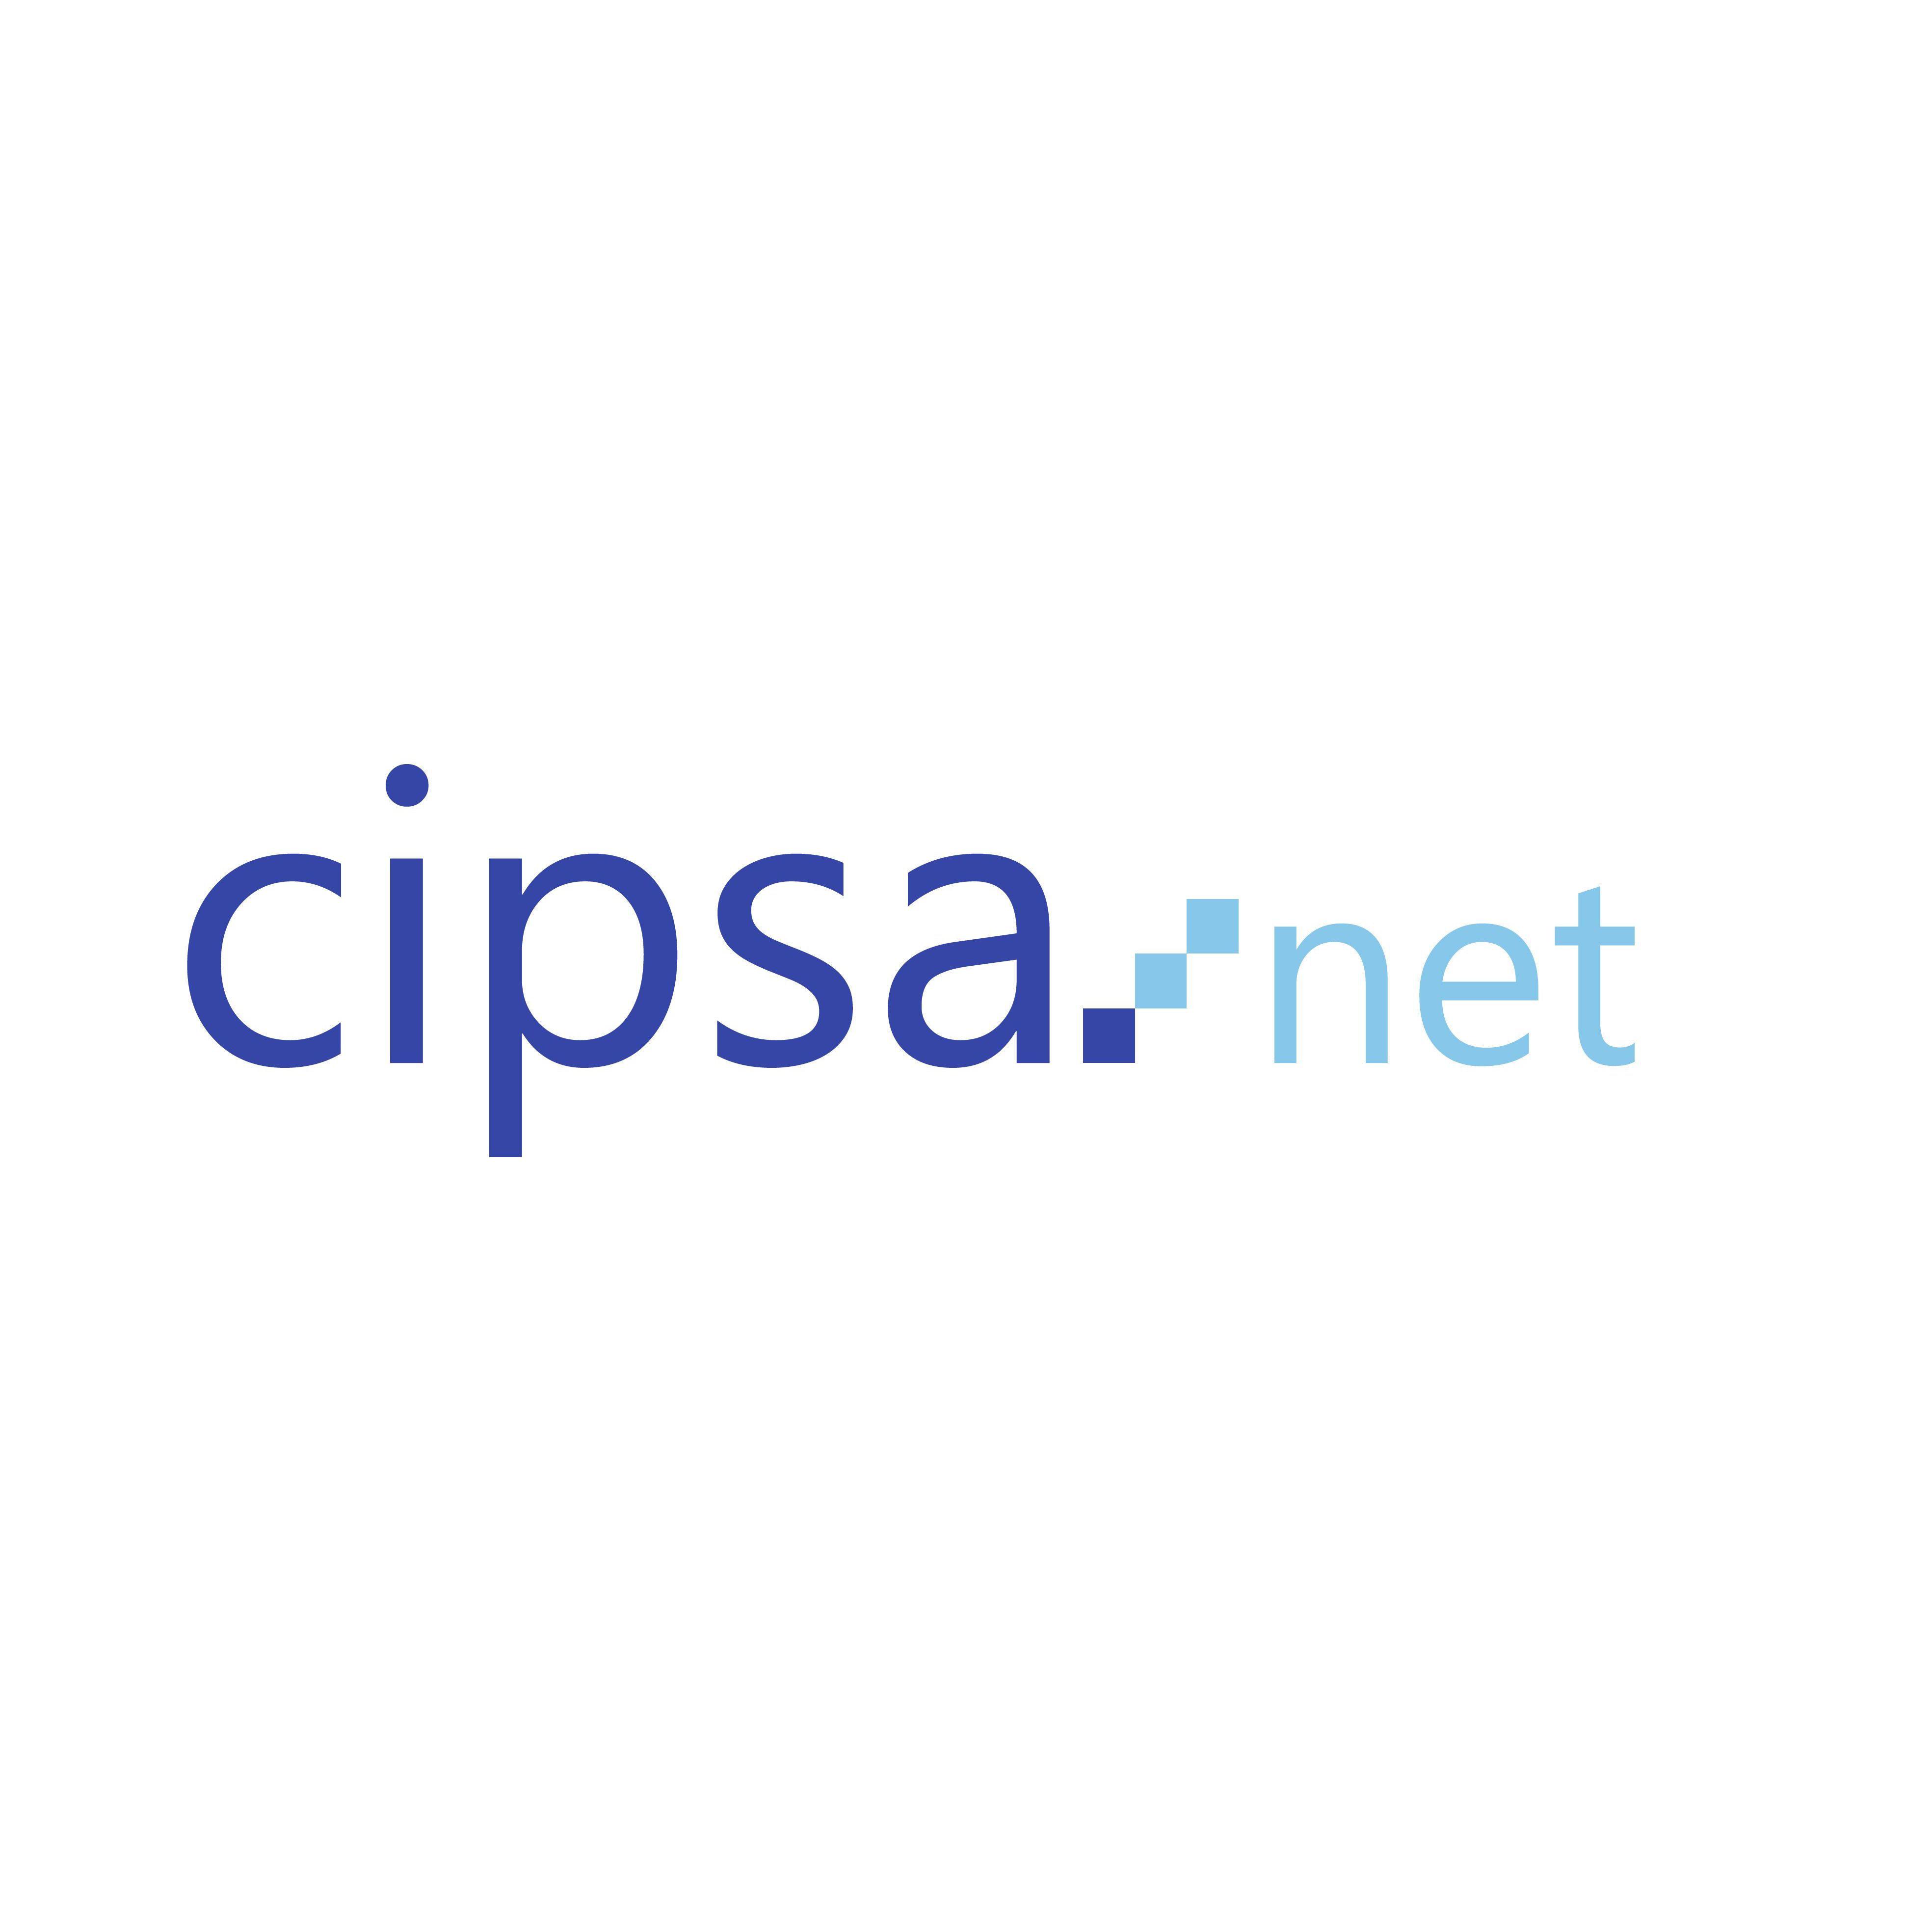 Centro Informática Profesional - CIPSA.NET Logo